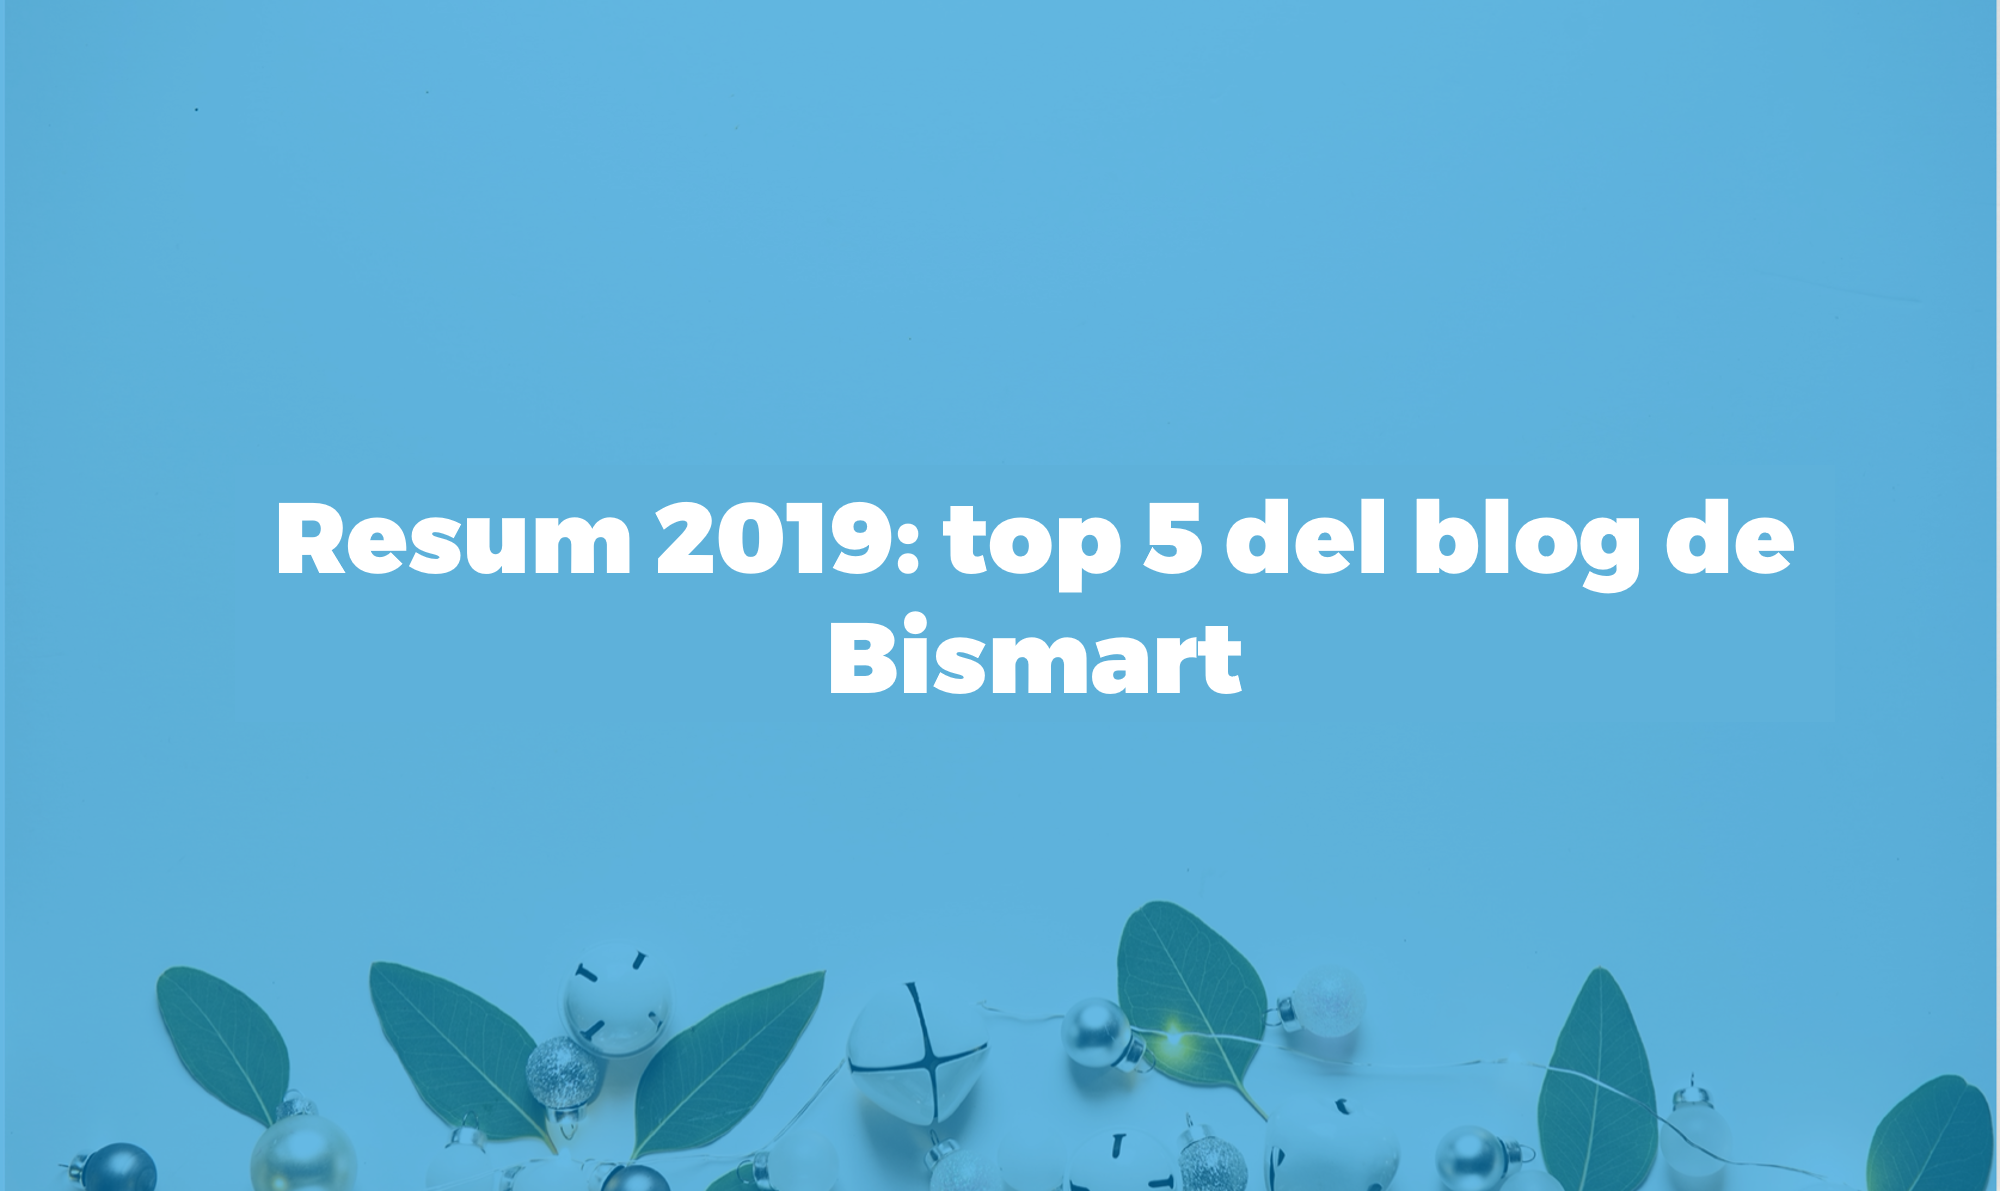 Resum 2019 blog de bismart